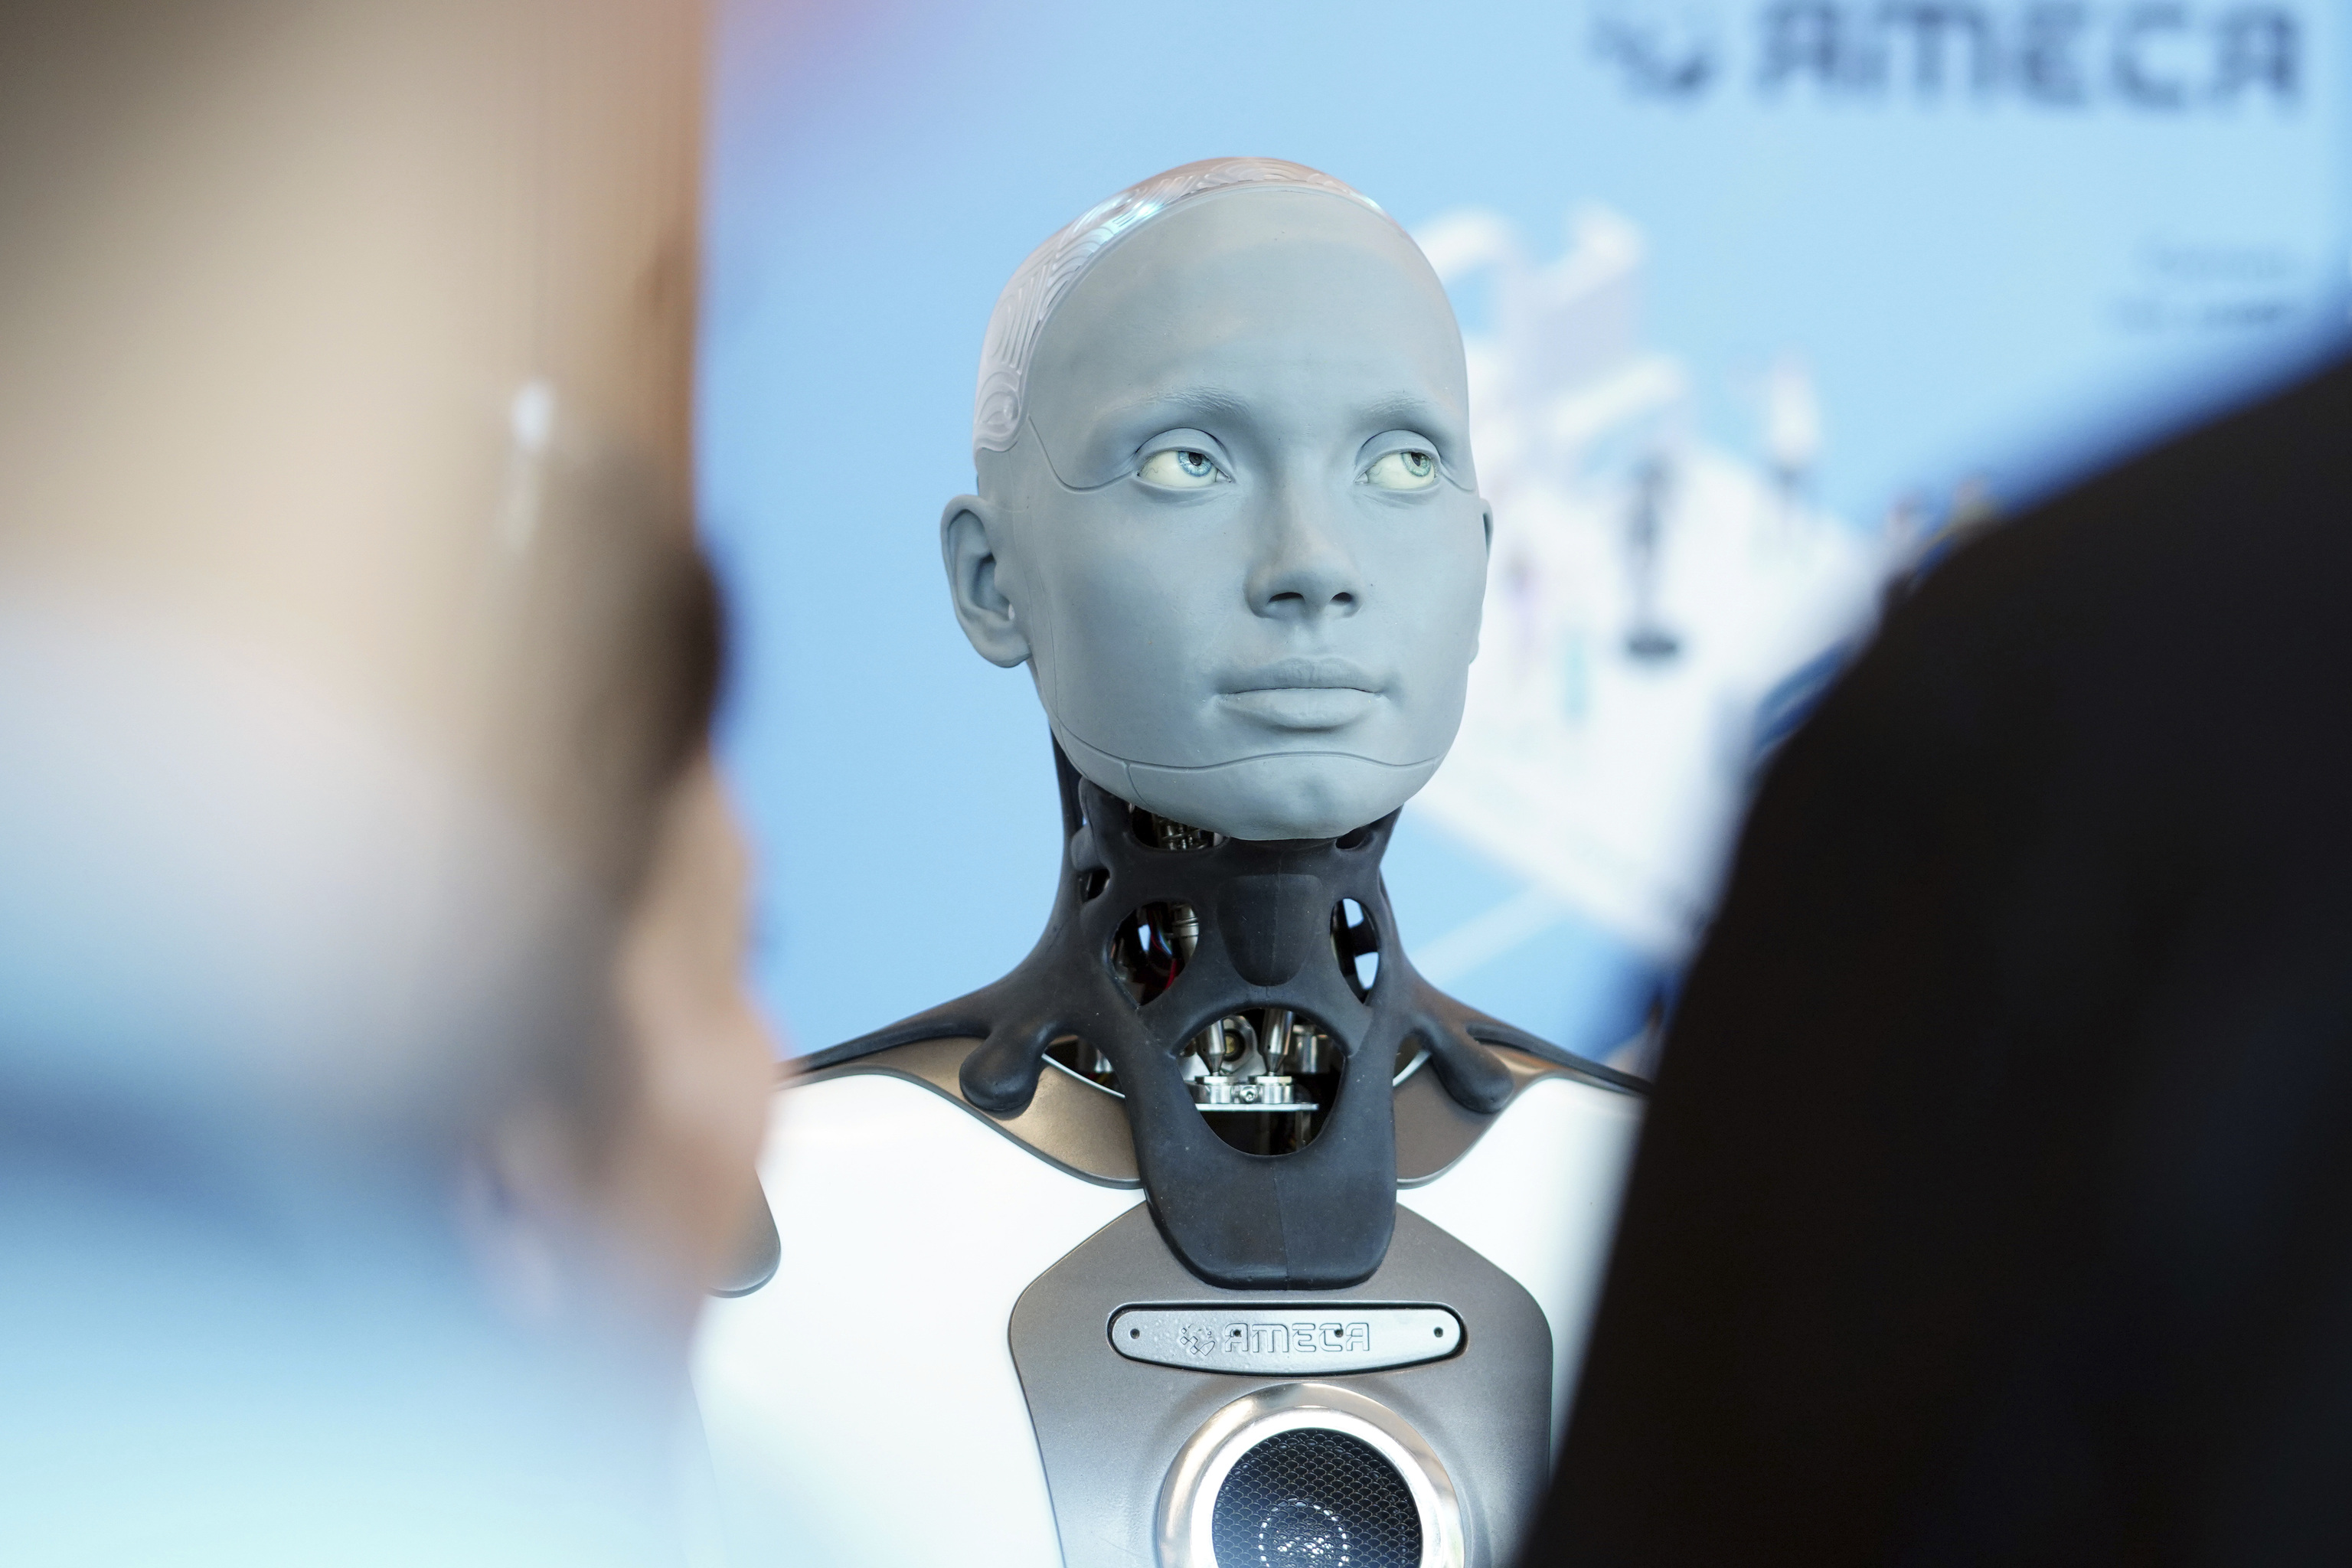 El robot con forma humana del fabricante britnico Engineered Arts, interacta con los visitantes